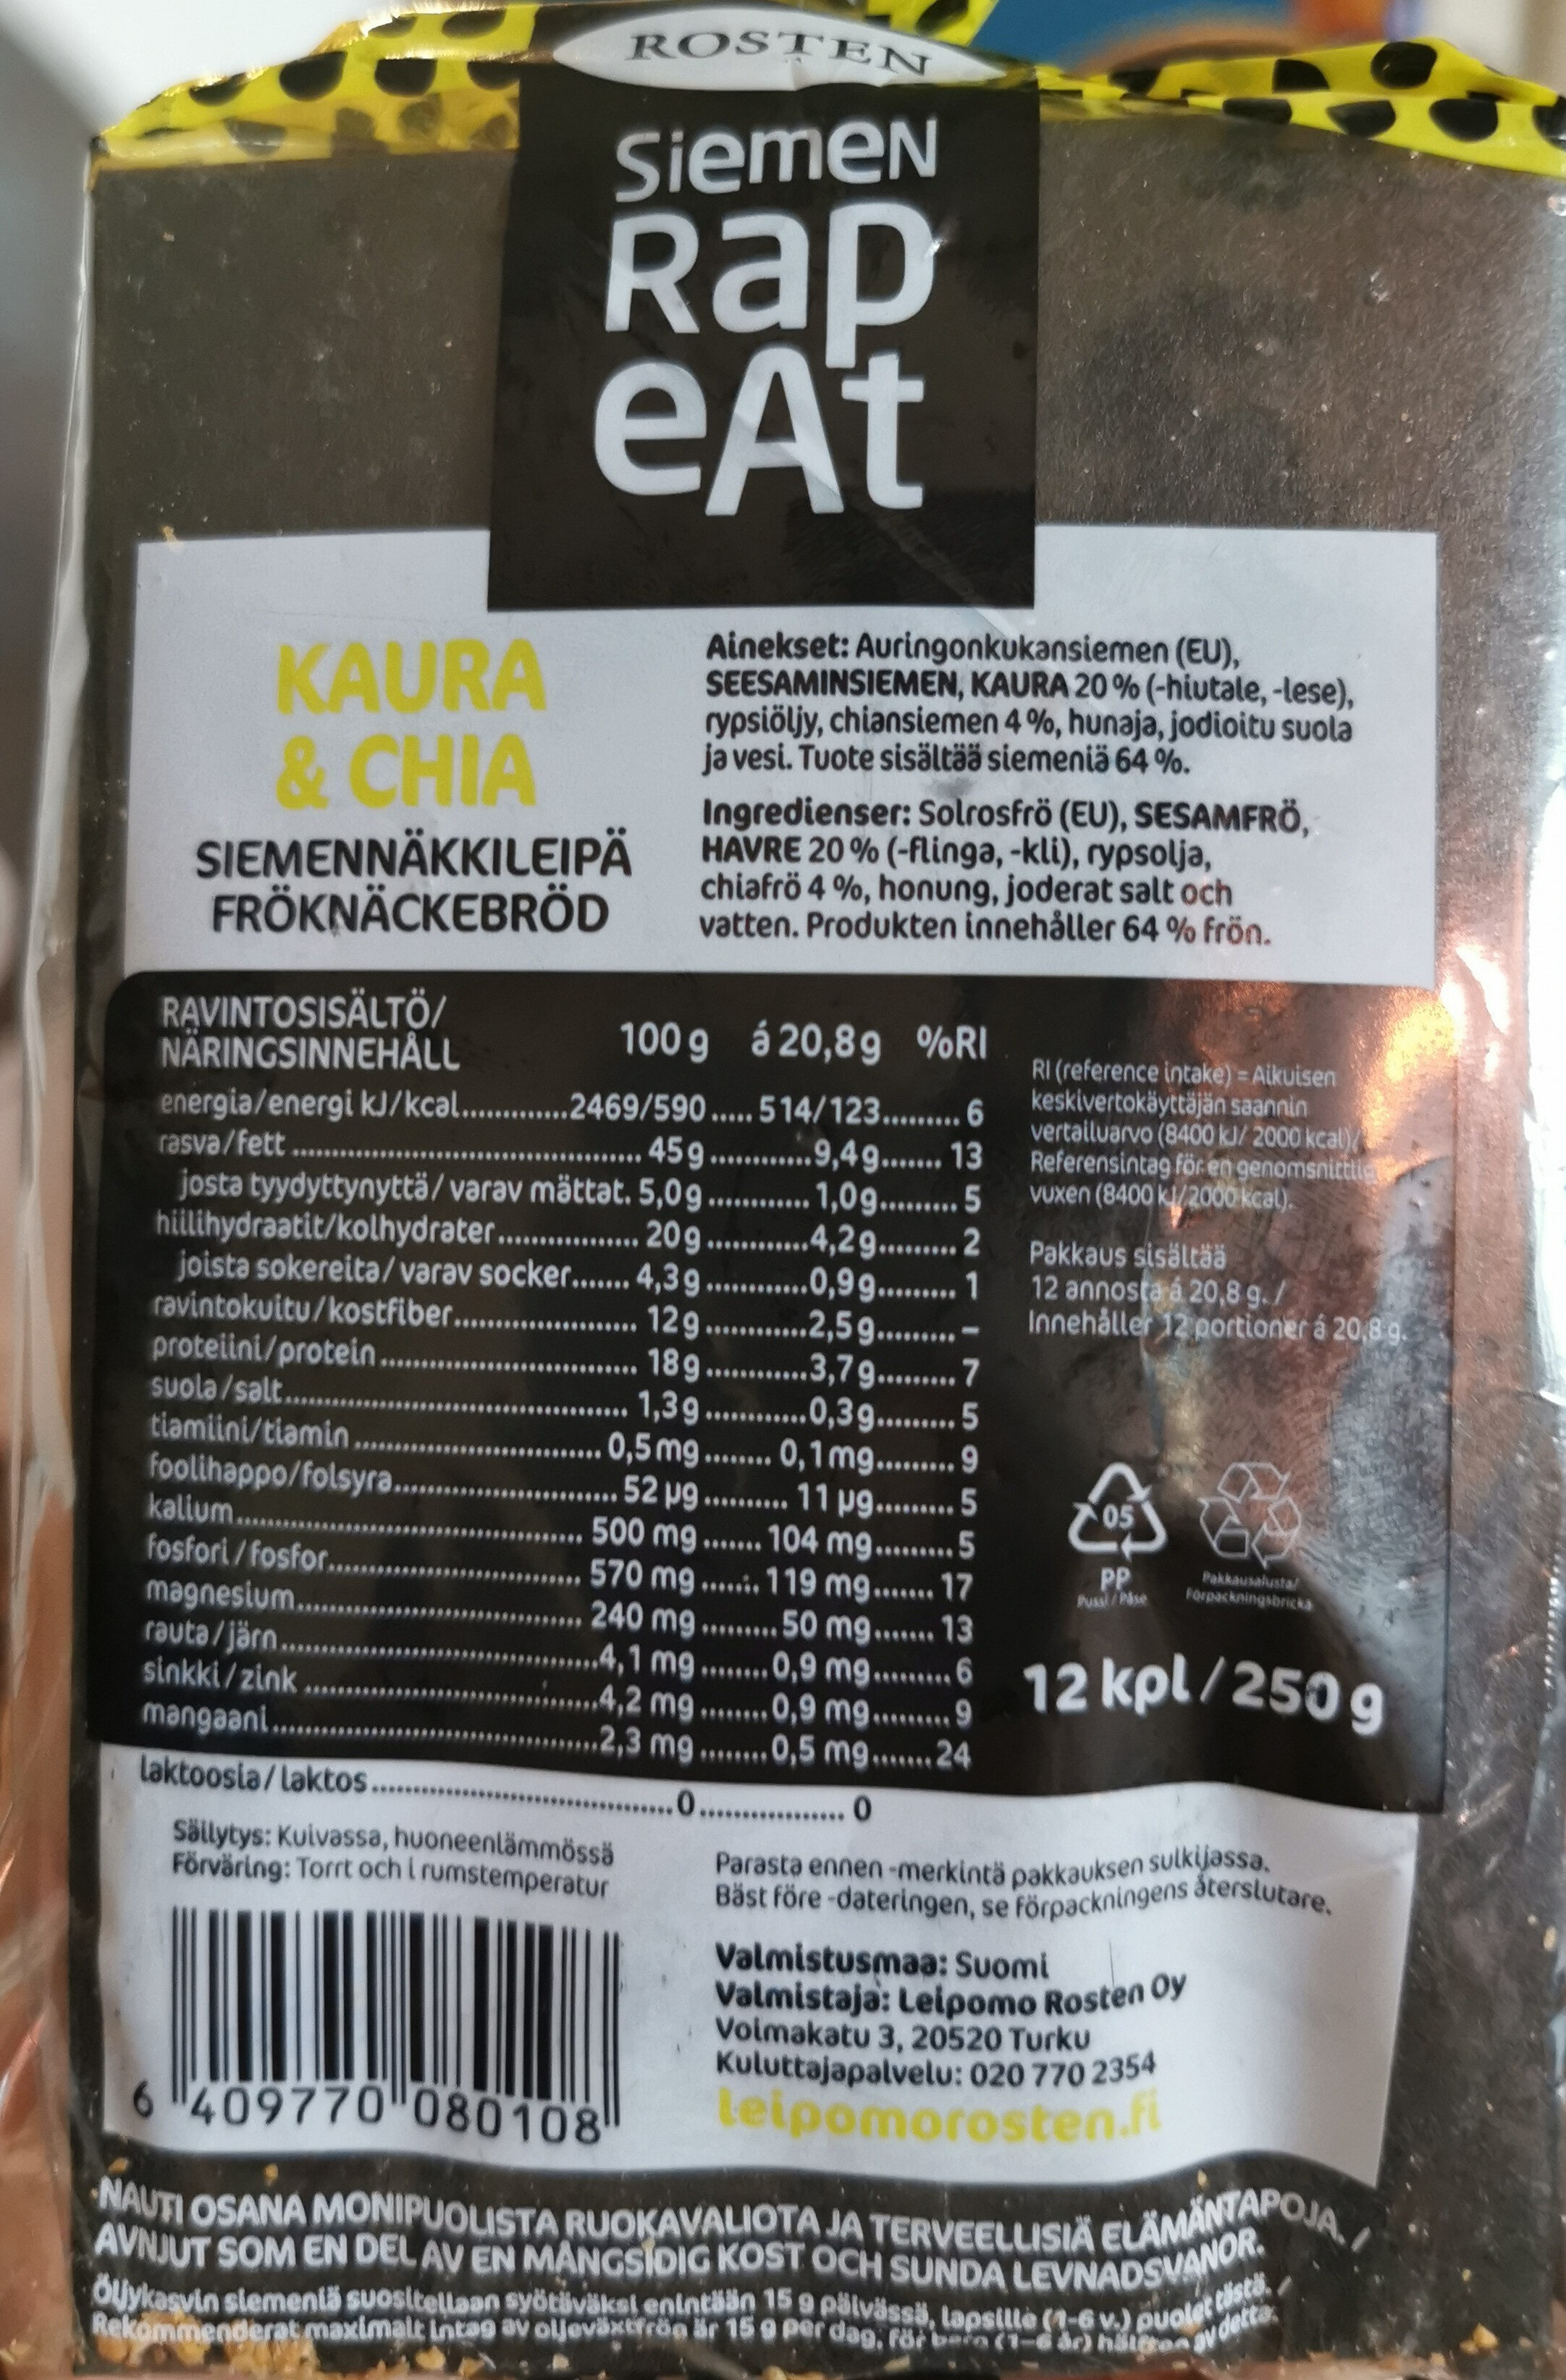 Siemennäkkileipä, Kaura&Chia - Tuote